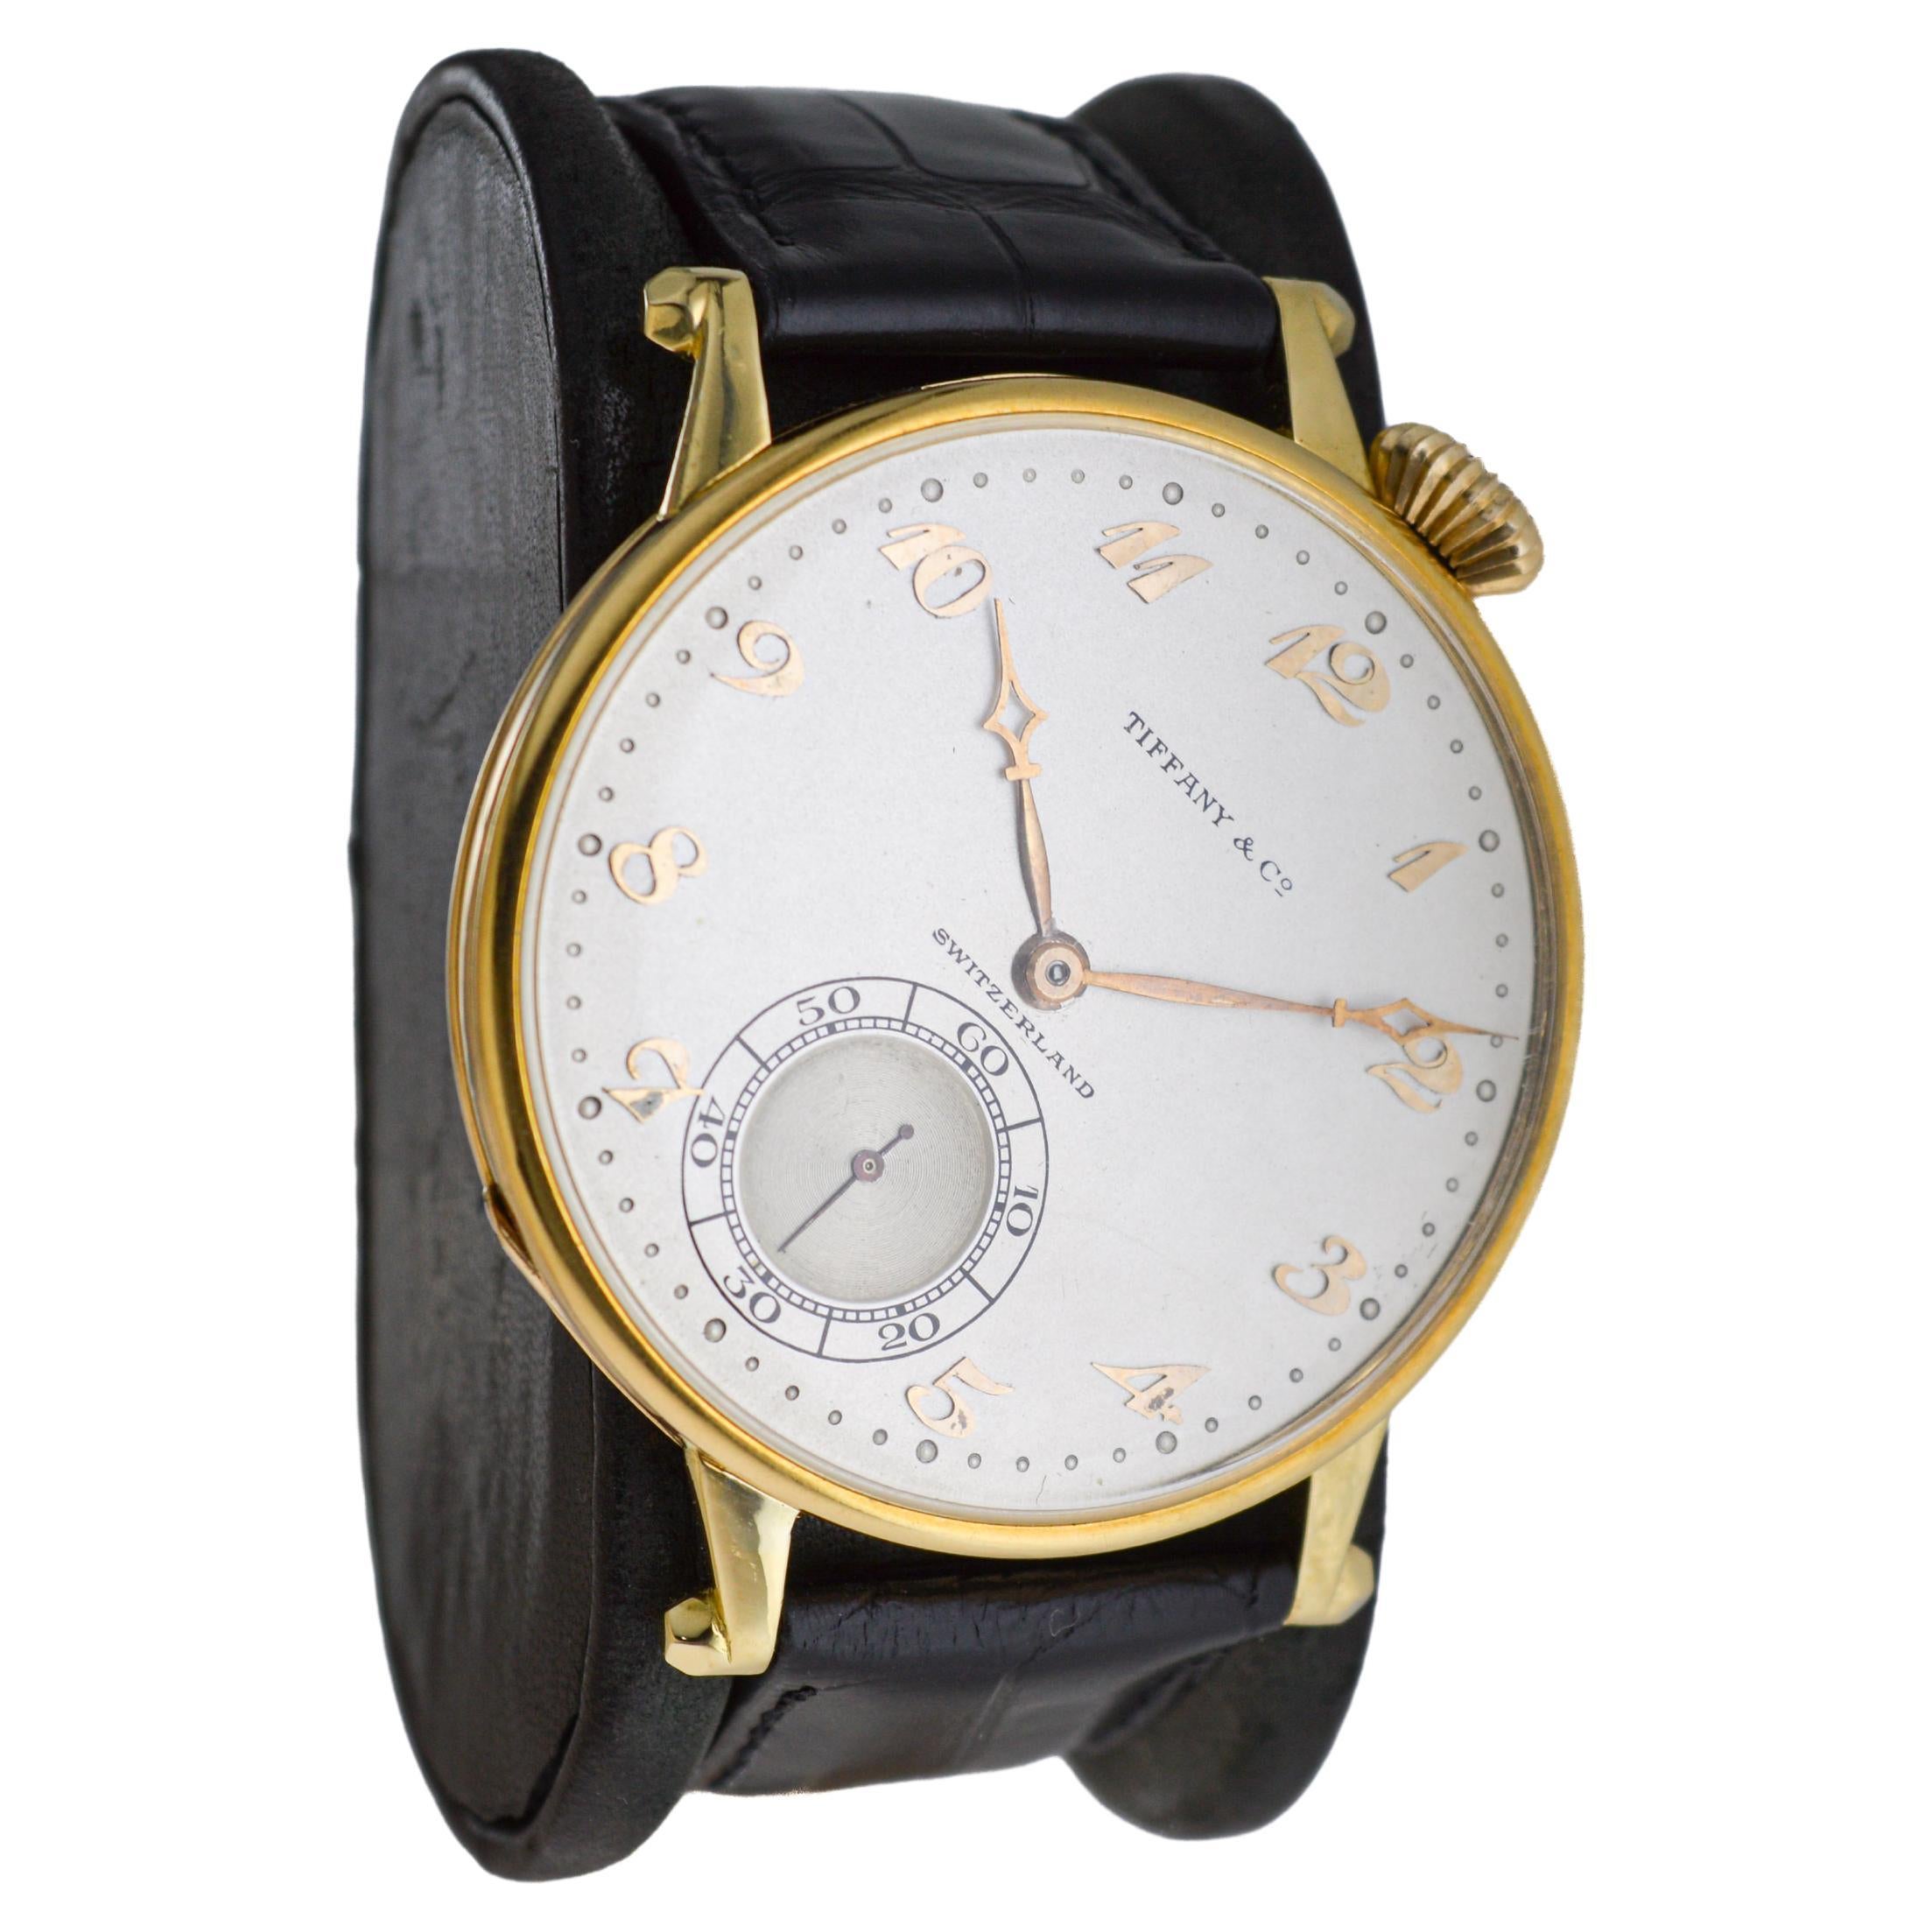 USINE / MAISON : Agassiz Watch Company pour Tiffany & Co. 
STYLE / RÉFÉRENCE : Montre-bracelet de poche surdimensionnée Art déco
METAL / MATERIAL : 18Kt. l'or jaune massif 
CIRCA / ANNÉE : années 1920
DIMENSIONS / TAILLE : Diamètre 43mm
MOUVEMENT /